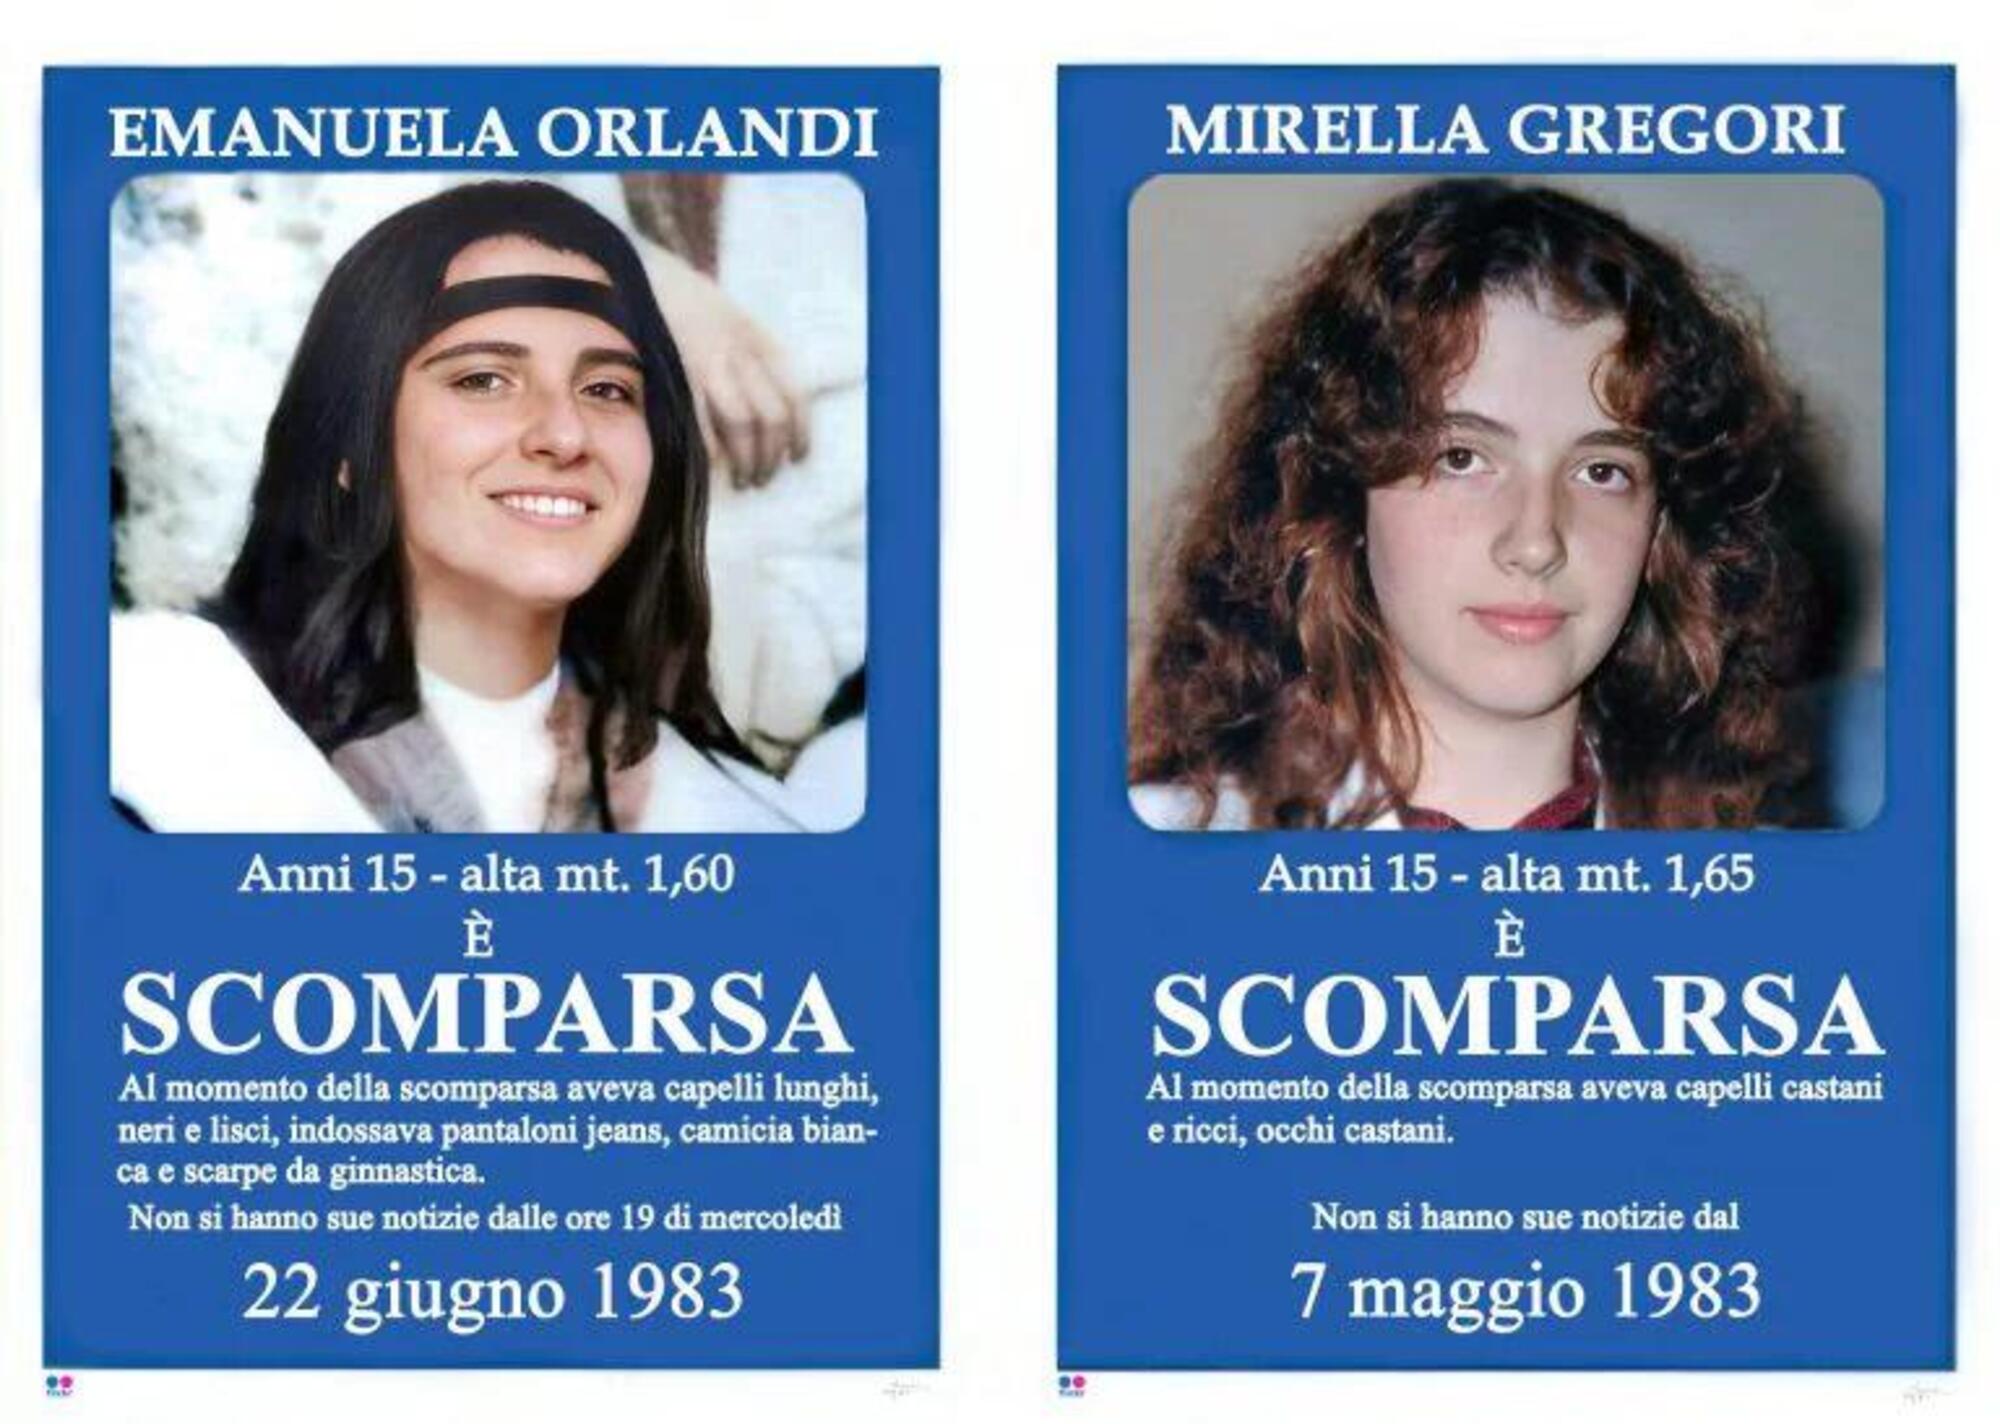  Il restauro digitale delle fotografie di Emanuela Orlandi e Mirella Gregori